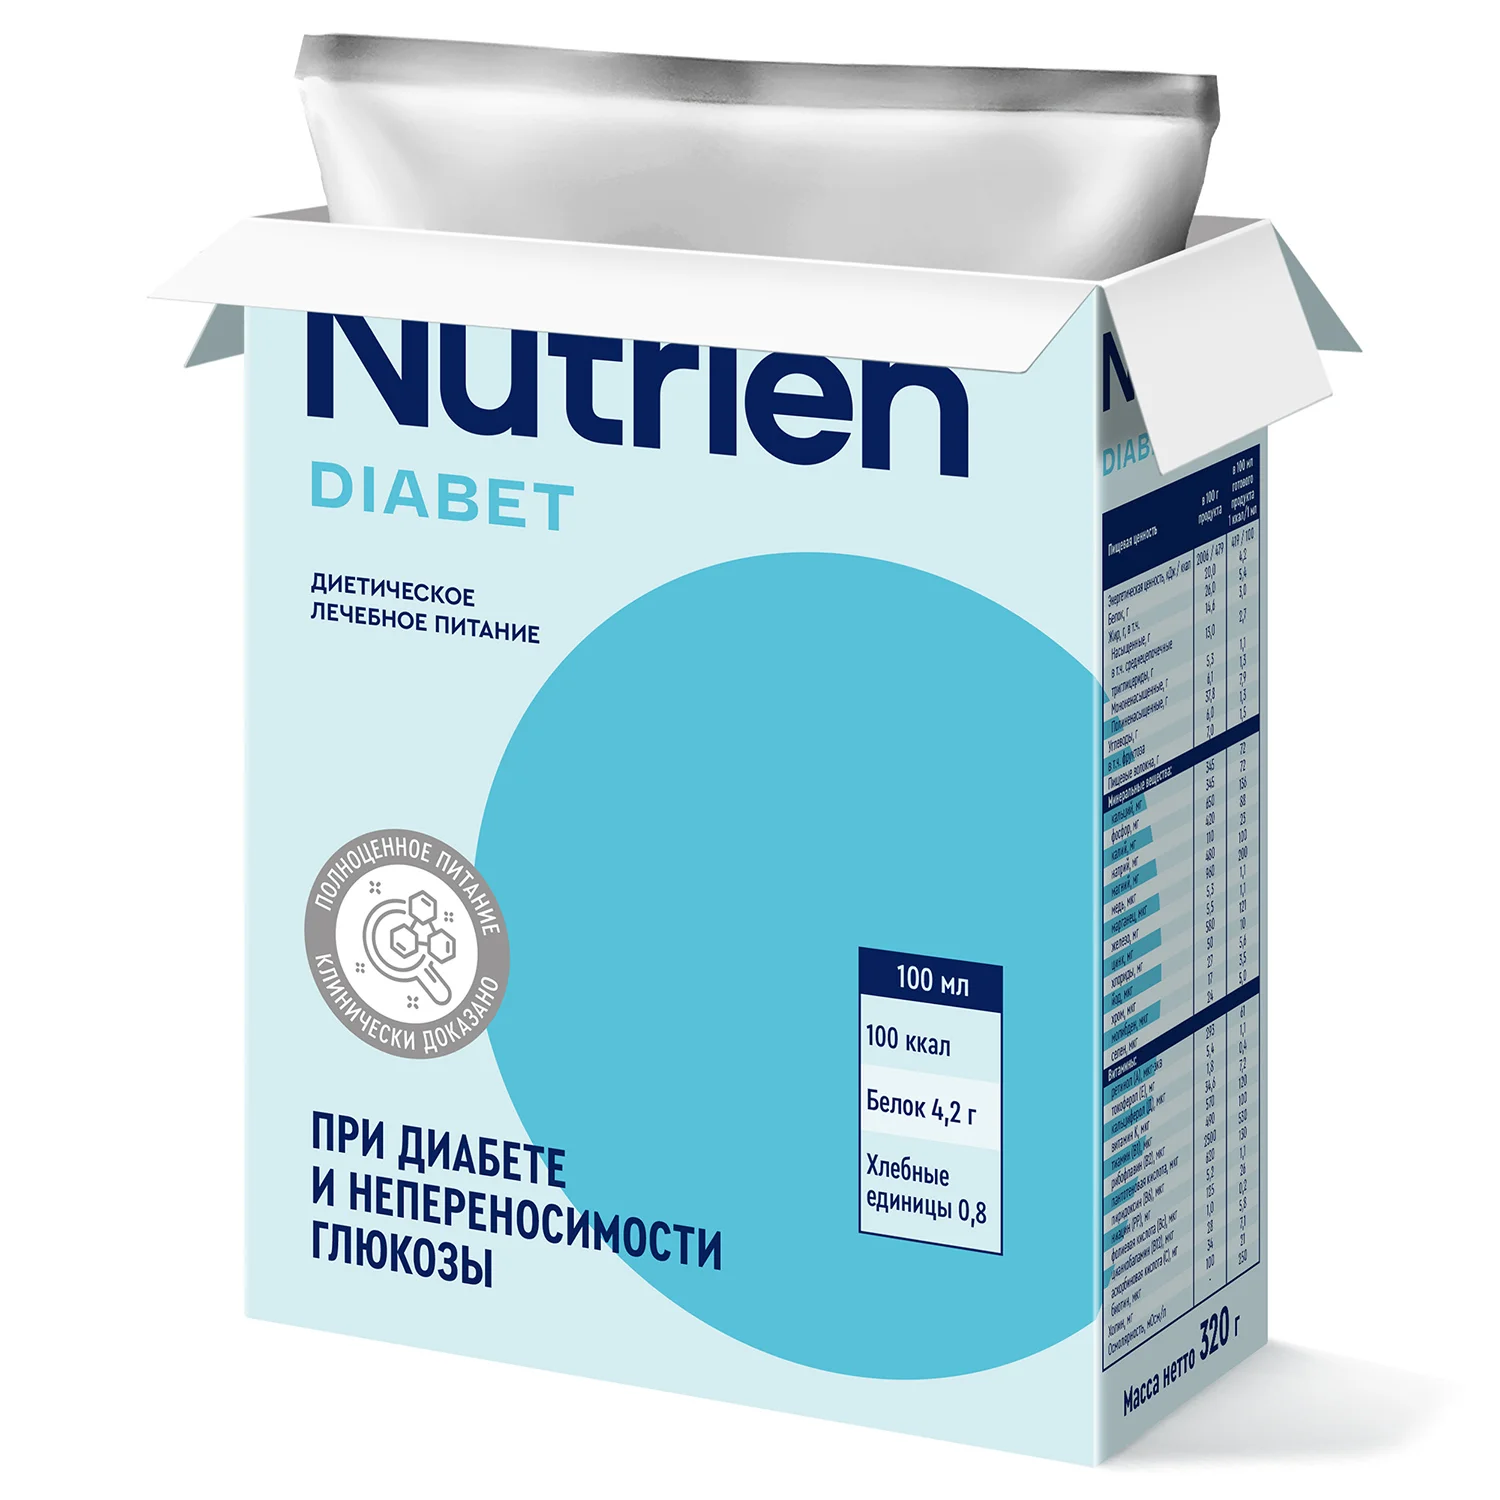 Nutrien Diabet - 18